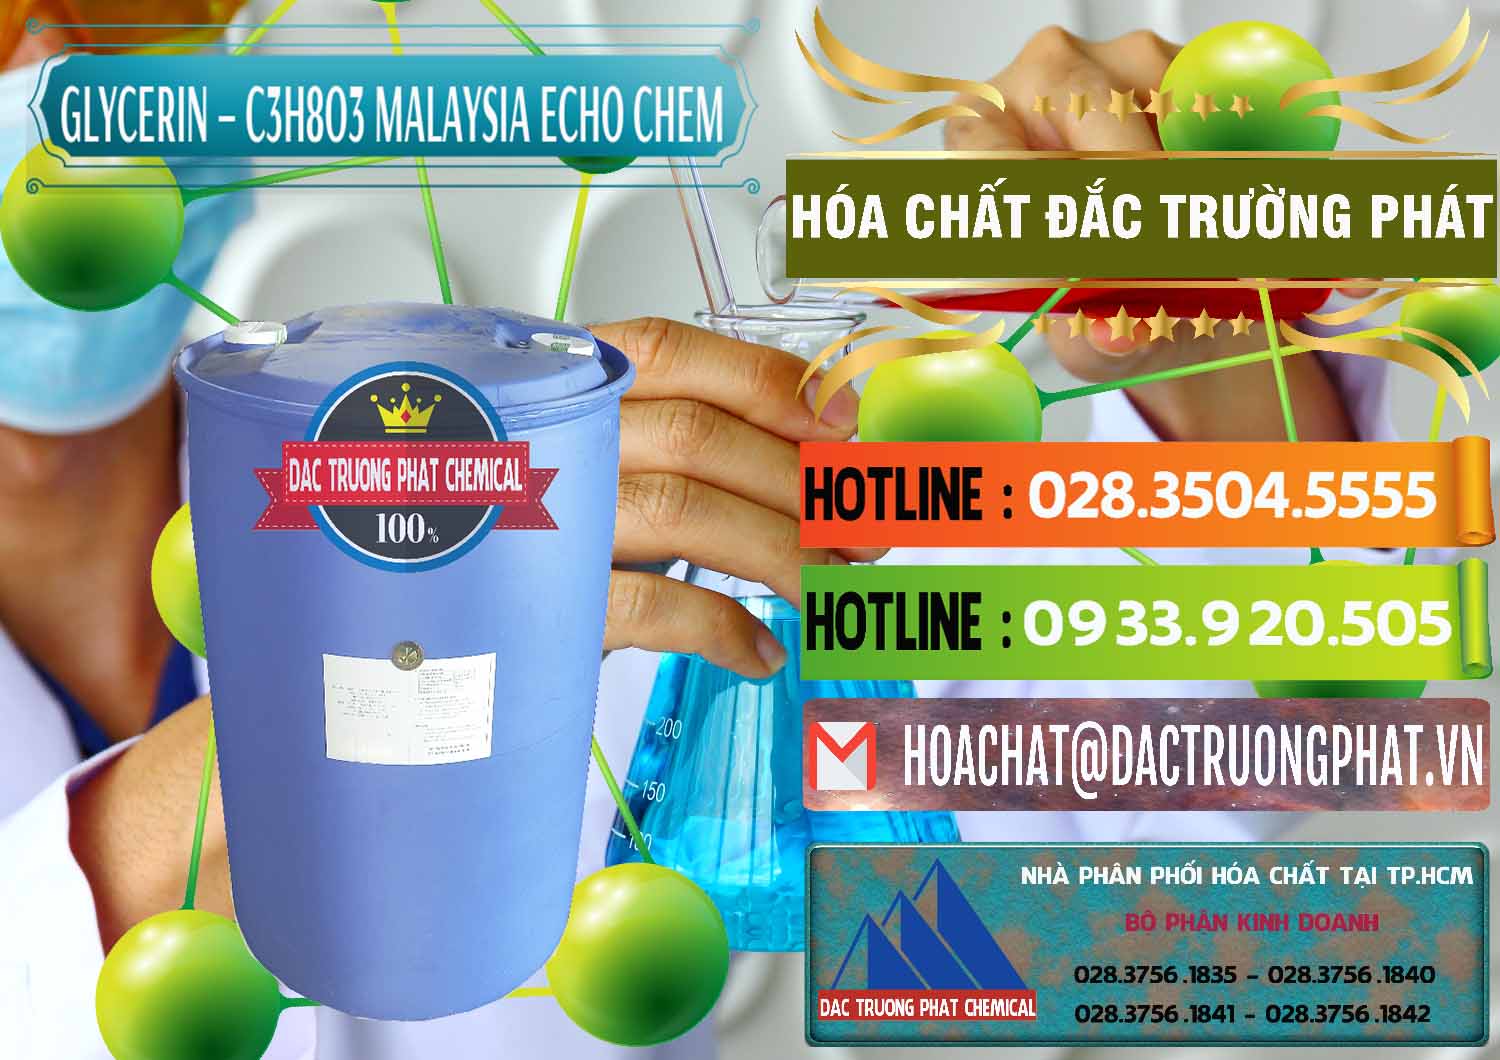 Nơi phân phối & bán C3H8O3 - Glycerin 99.7% Echo Chem Malaysia - 0273 - Nơi cung cấp _ phân phối hóa chất tại TP.HCM - cungcaphoachat.com.vn